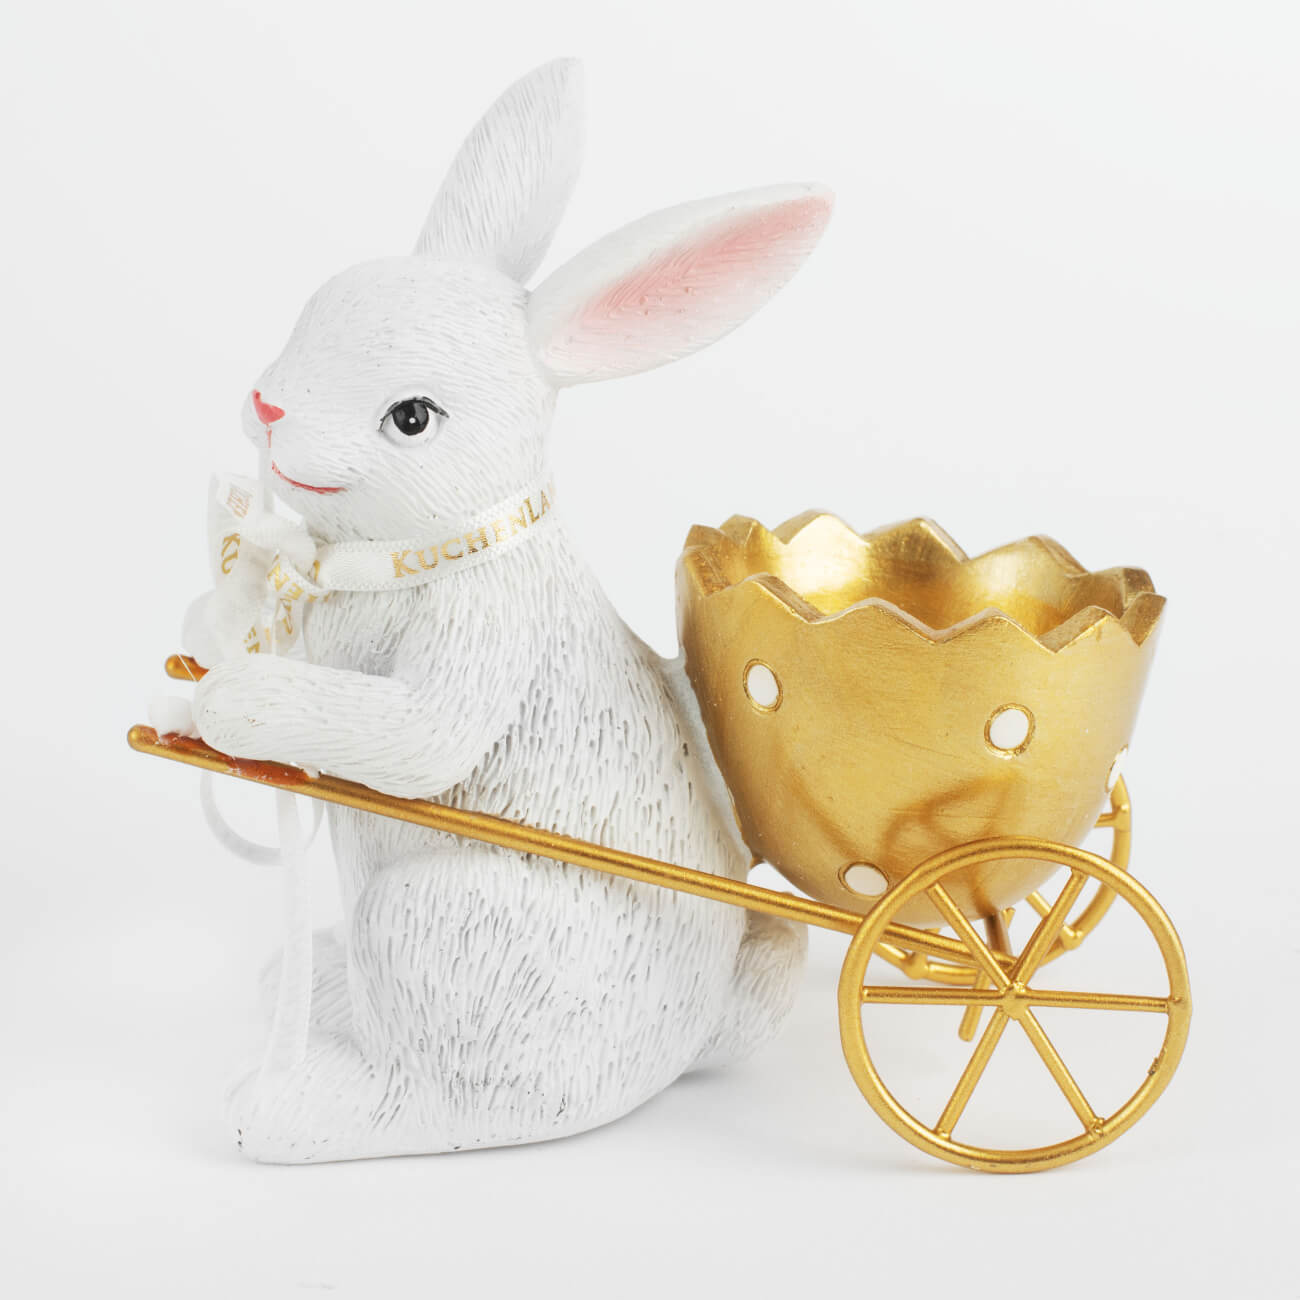 Подставка для яйца, 12 см, полирезин, бело-золотистая, Кролик с тележкой, Easter gold подставка для яйца 9х7 см бамбук кролик natural easter